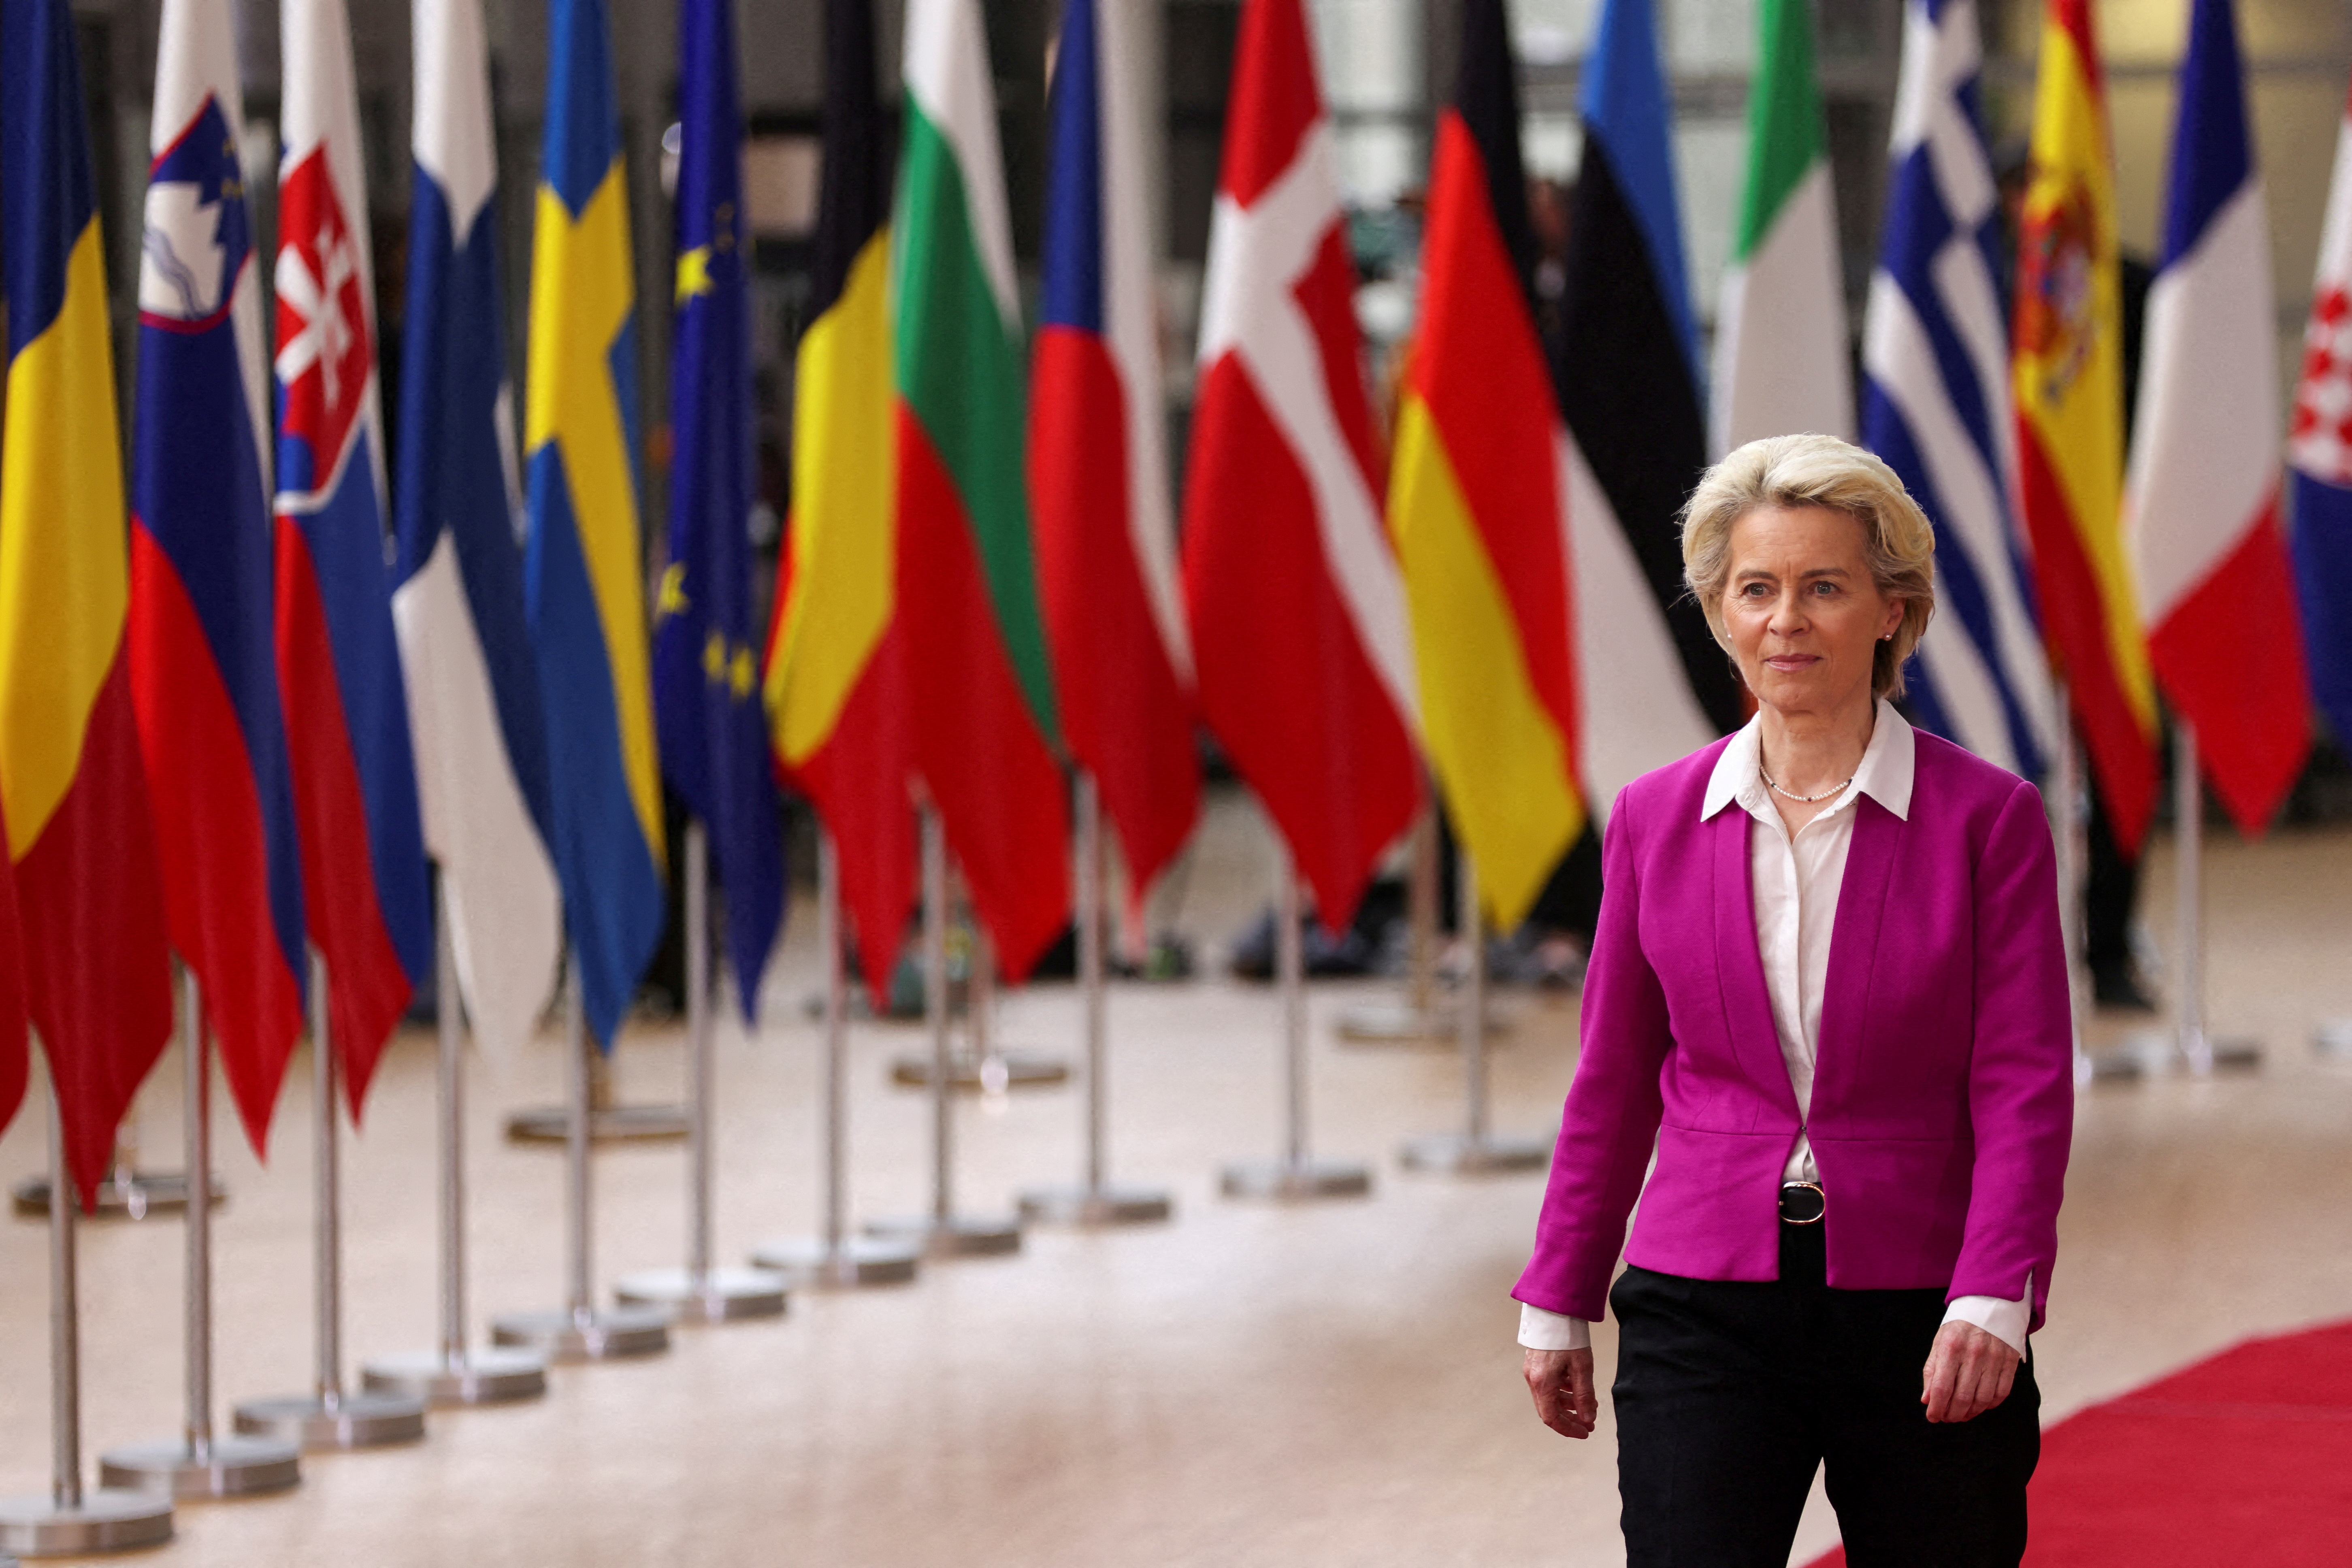 FOTO DE ARCHIVO: La presidenta de la Comisión Europea, Ursula von der Leyen, llega a la cumbre de líderes de la Unión Europea, mientras los líderes de la UE intentan llegar a un acuerdo sobre las sanciones petroleras rusas en respuesta a la invasión rusa de Ucrania, en Bruselas, Bélgica, el 30 de mayo de 2022. REUTERS/Johanna Geron